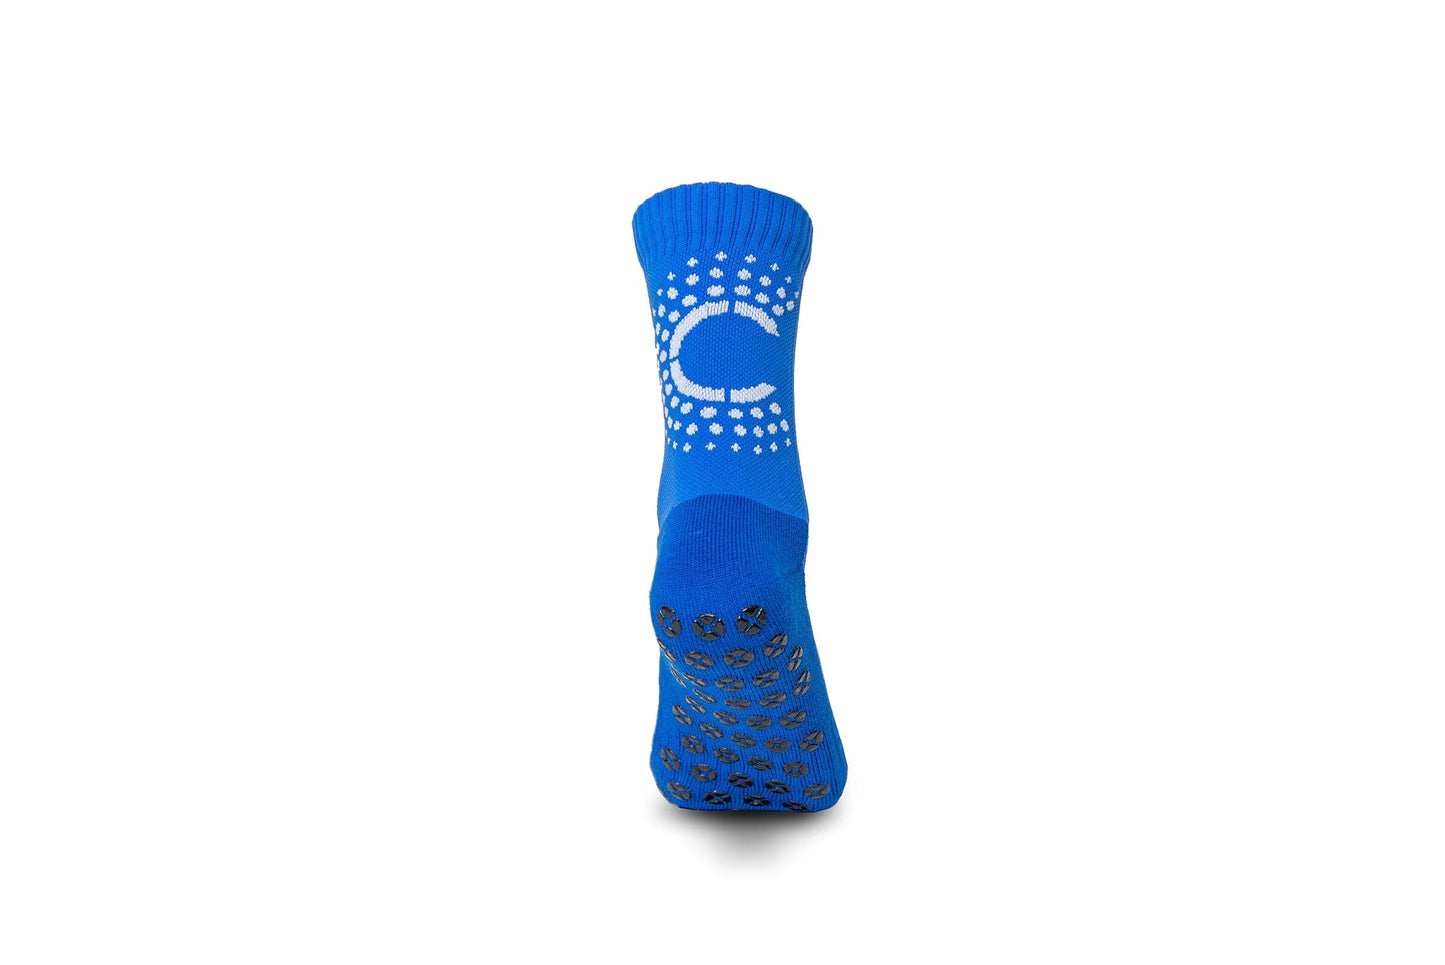 Control Sox 2.0 - Royal Blue Grip Socks Control Sox 